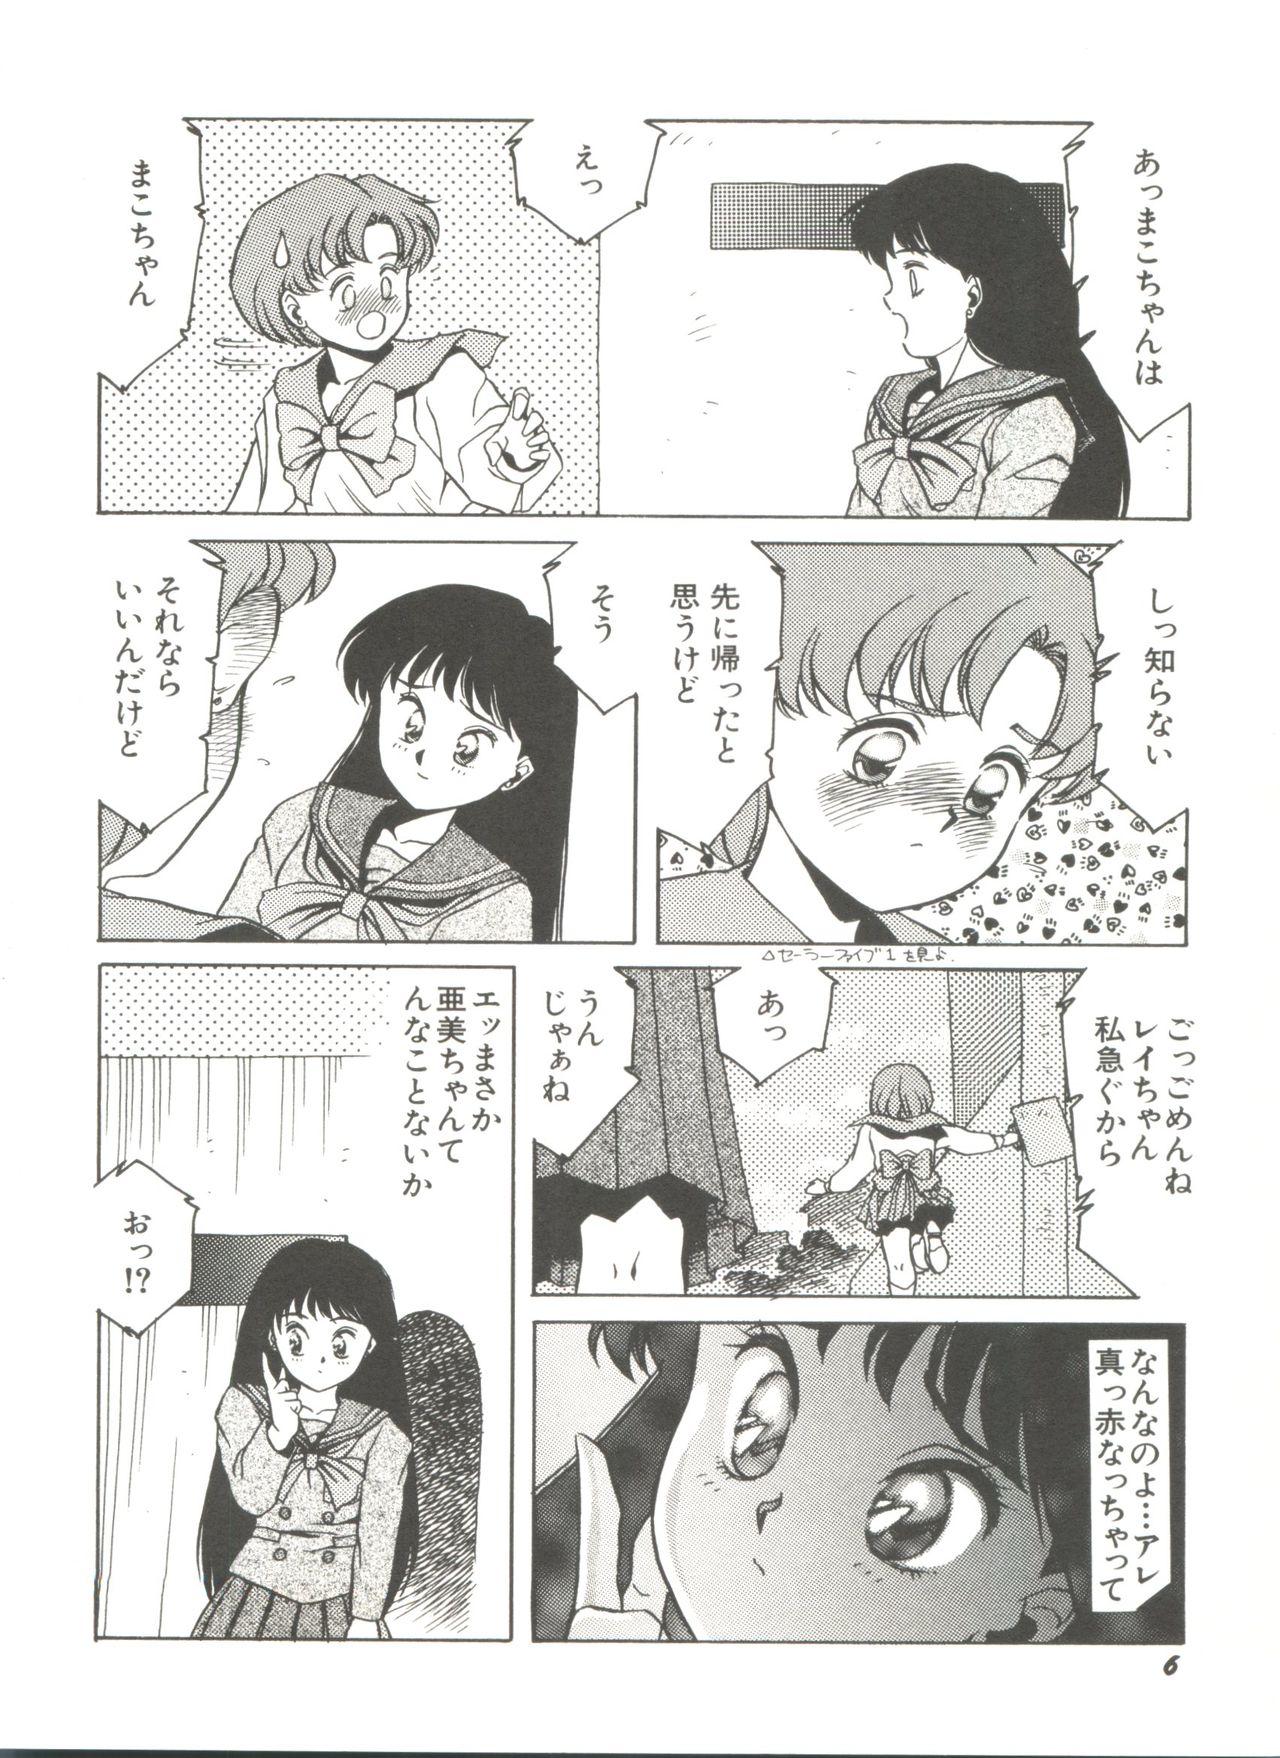 Blow Job Bishoujo Doujinshi Anthology 2 - Moon Paradise 1 Tsuki no Rakuen - Sailor moon Best Blow Job - Page 9